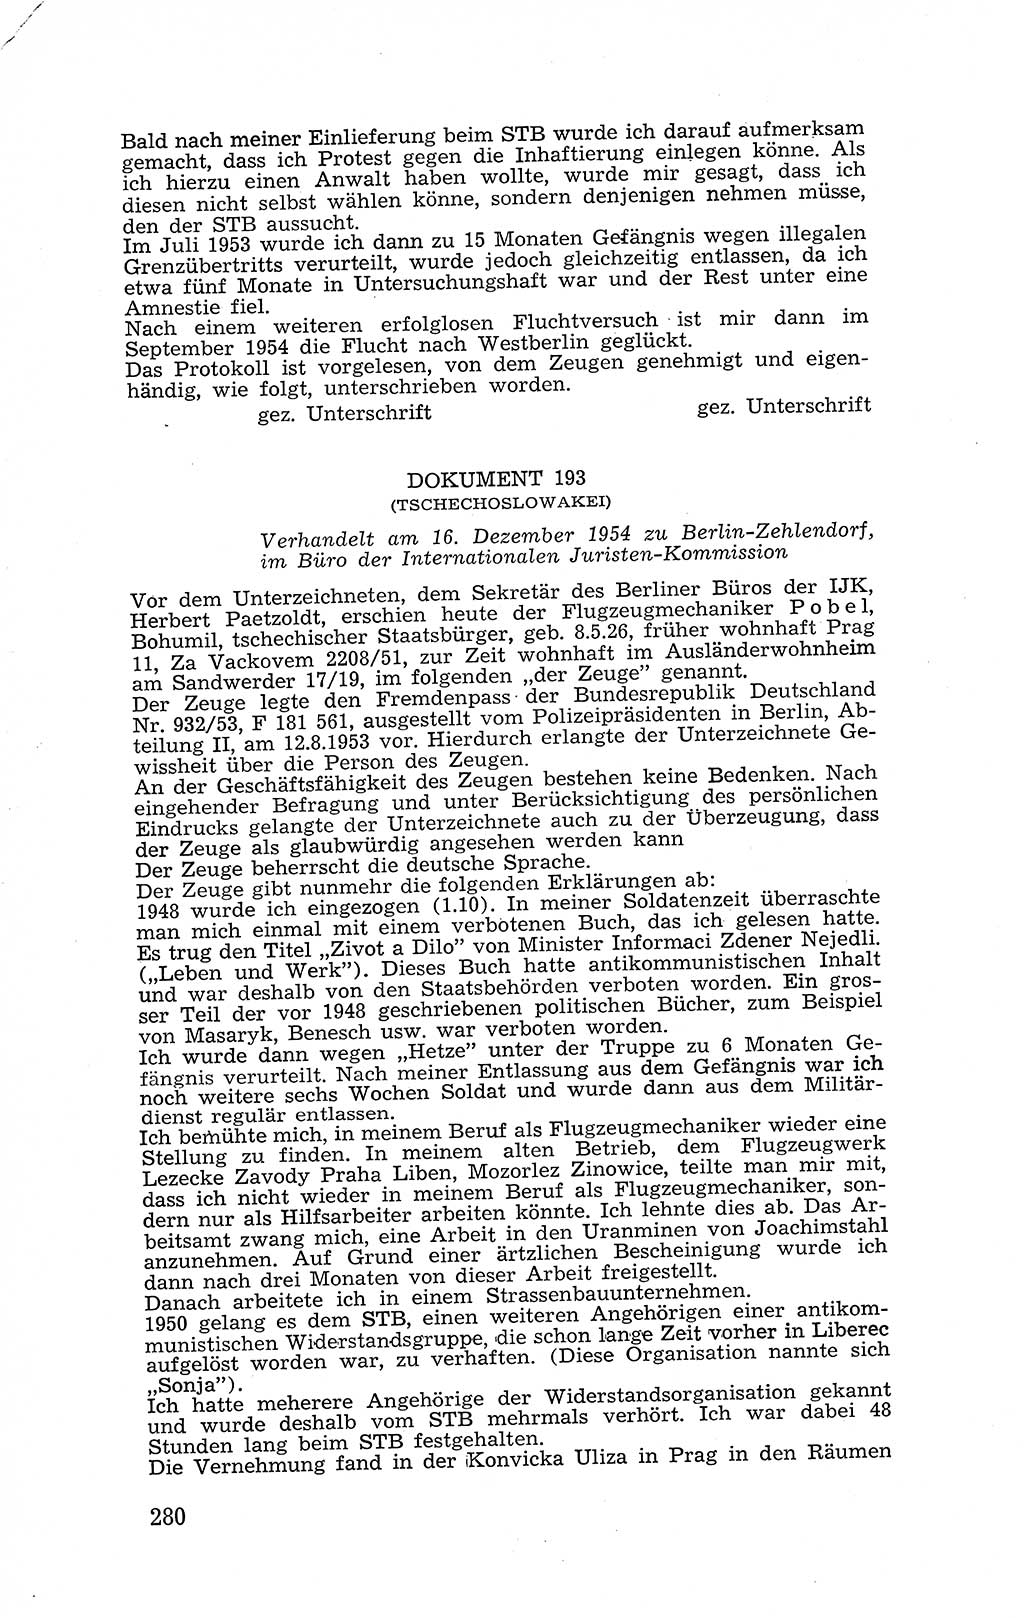 Recht in Fesseln, Dokumente, Internationale Juristen-Kommission [Bundesrepublik Deutschland (BRD)] 1955, Seite 280 (R. Dok. IJK BRD 1955, S. 280)